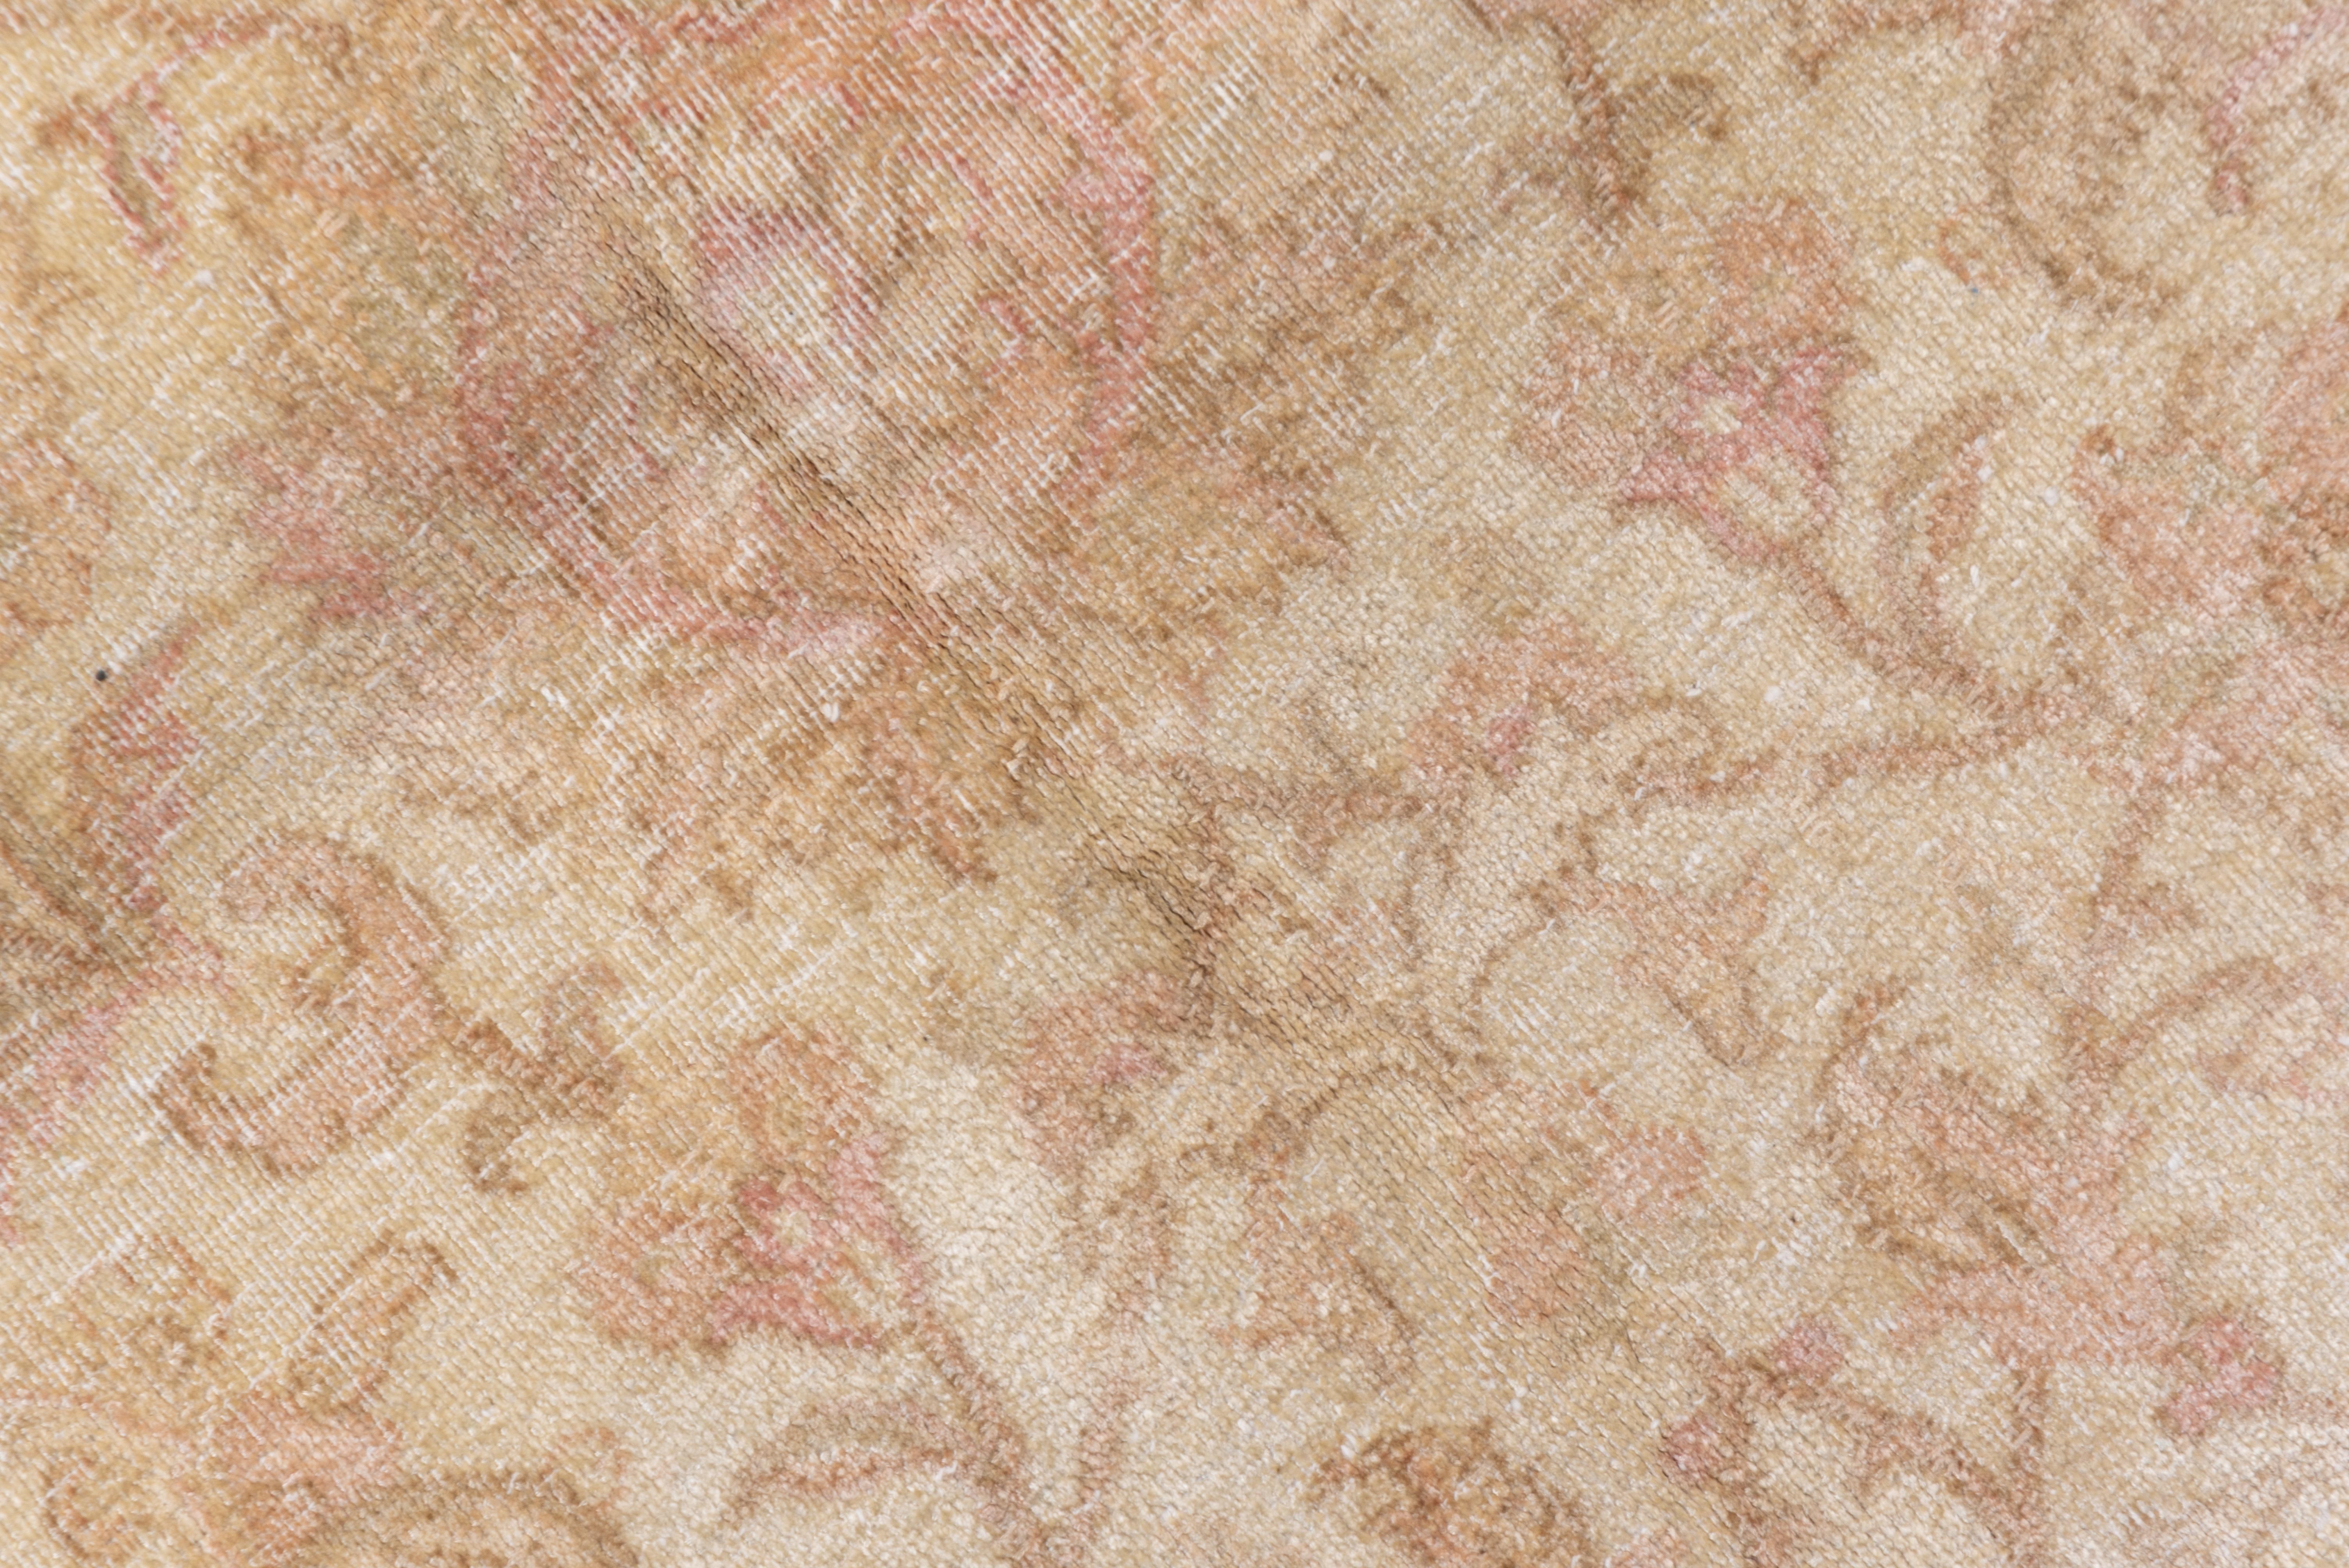 Antique Urban Silk Turkish Hereke Carpet, Pink Accents, Neutral Palette 1